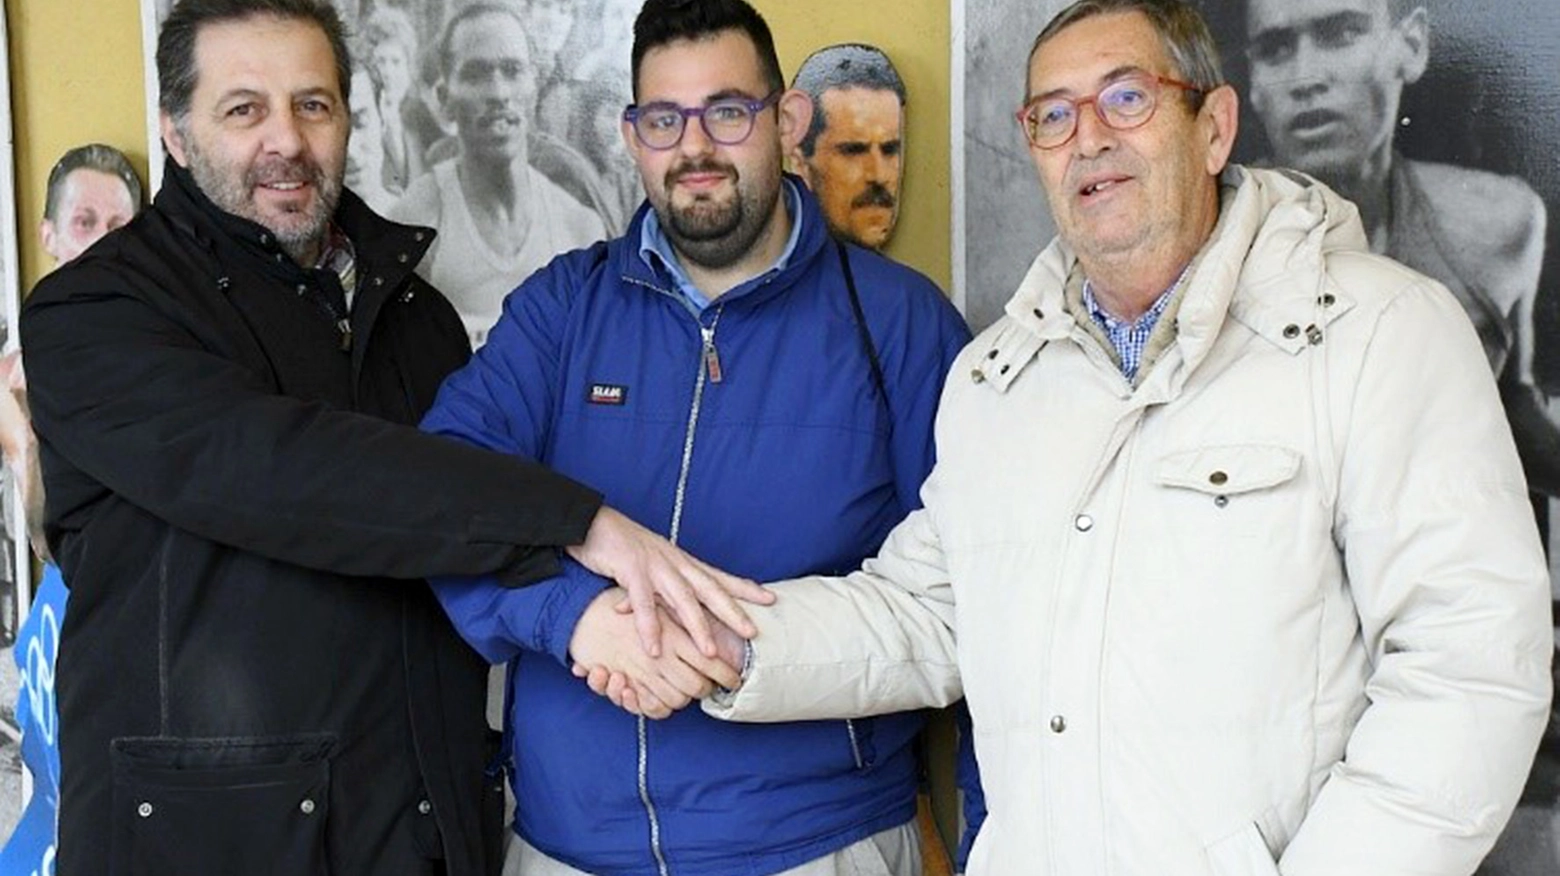 Da destra il presidente Giuseppe Gallo Stampino, Marco Ascari e Walter Brambilla